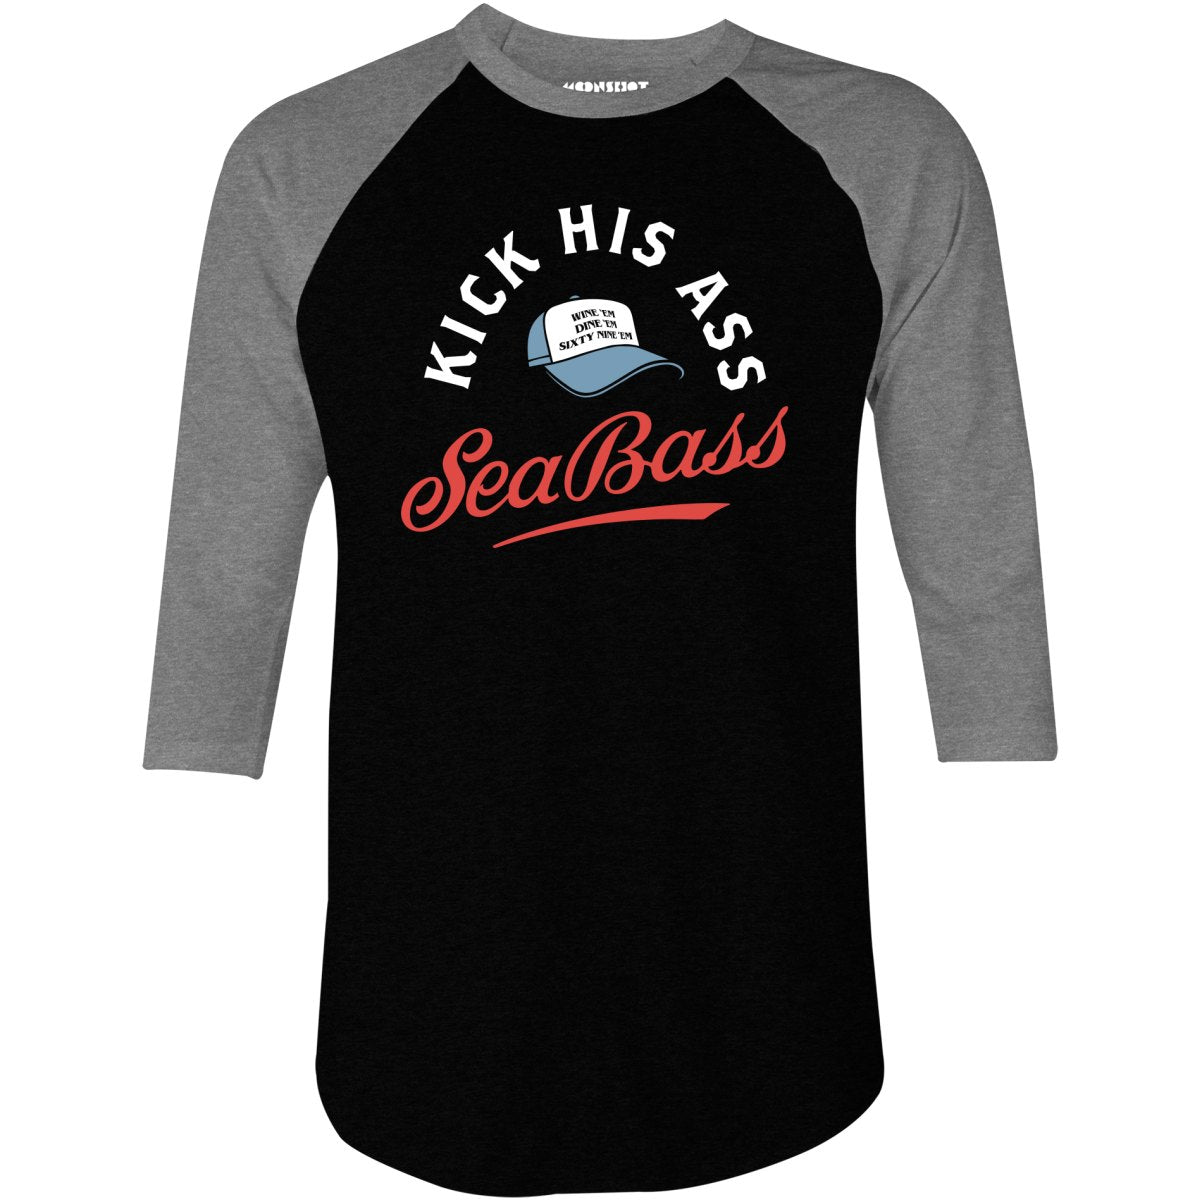 Kick His Ass Sea Bass - 3/4 Sleeve Raglan T-Shirt